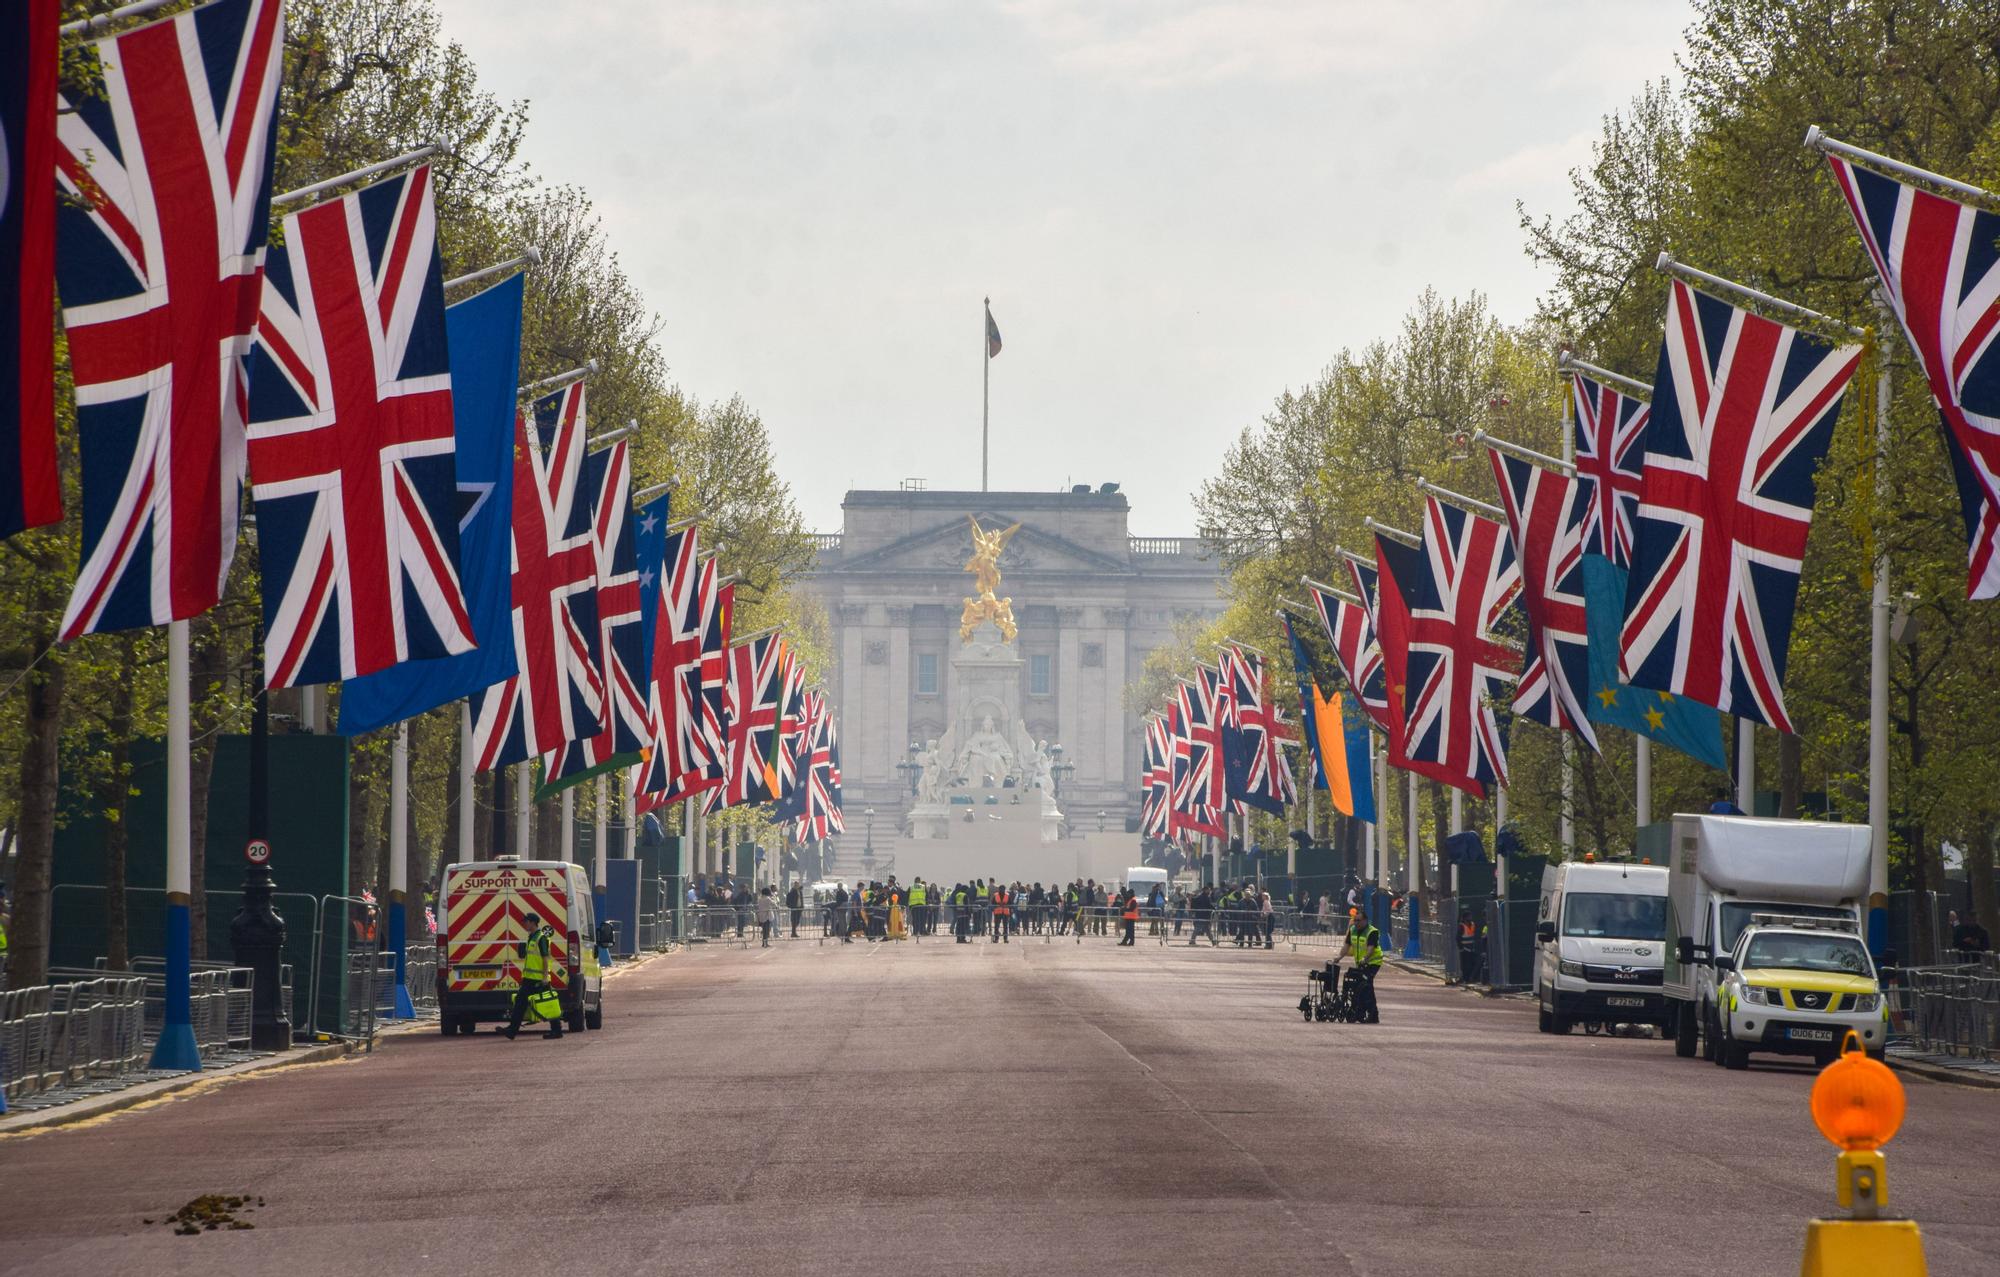 Banderas del Reino Unido y de los países de la Commonwealth decoran el Mall, con el Palacio de Buckingham, al fondo, días antes de la coronación de Carlos III.